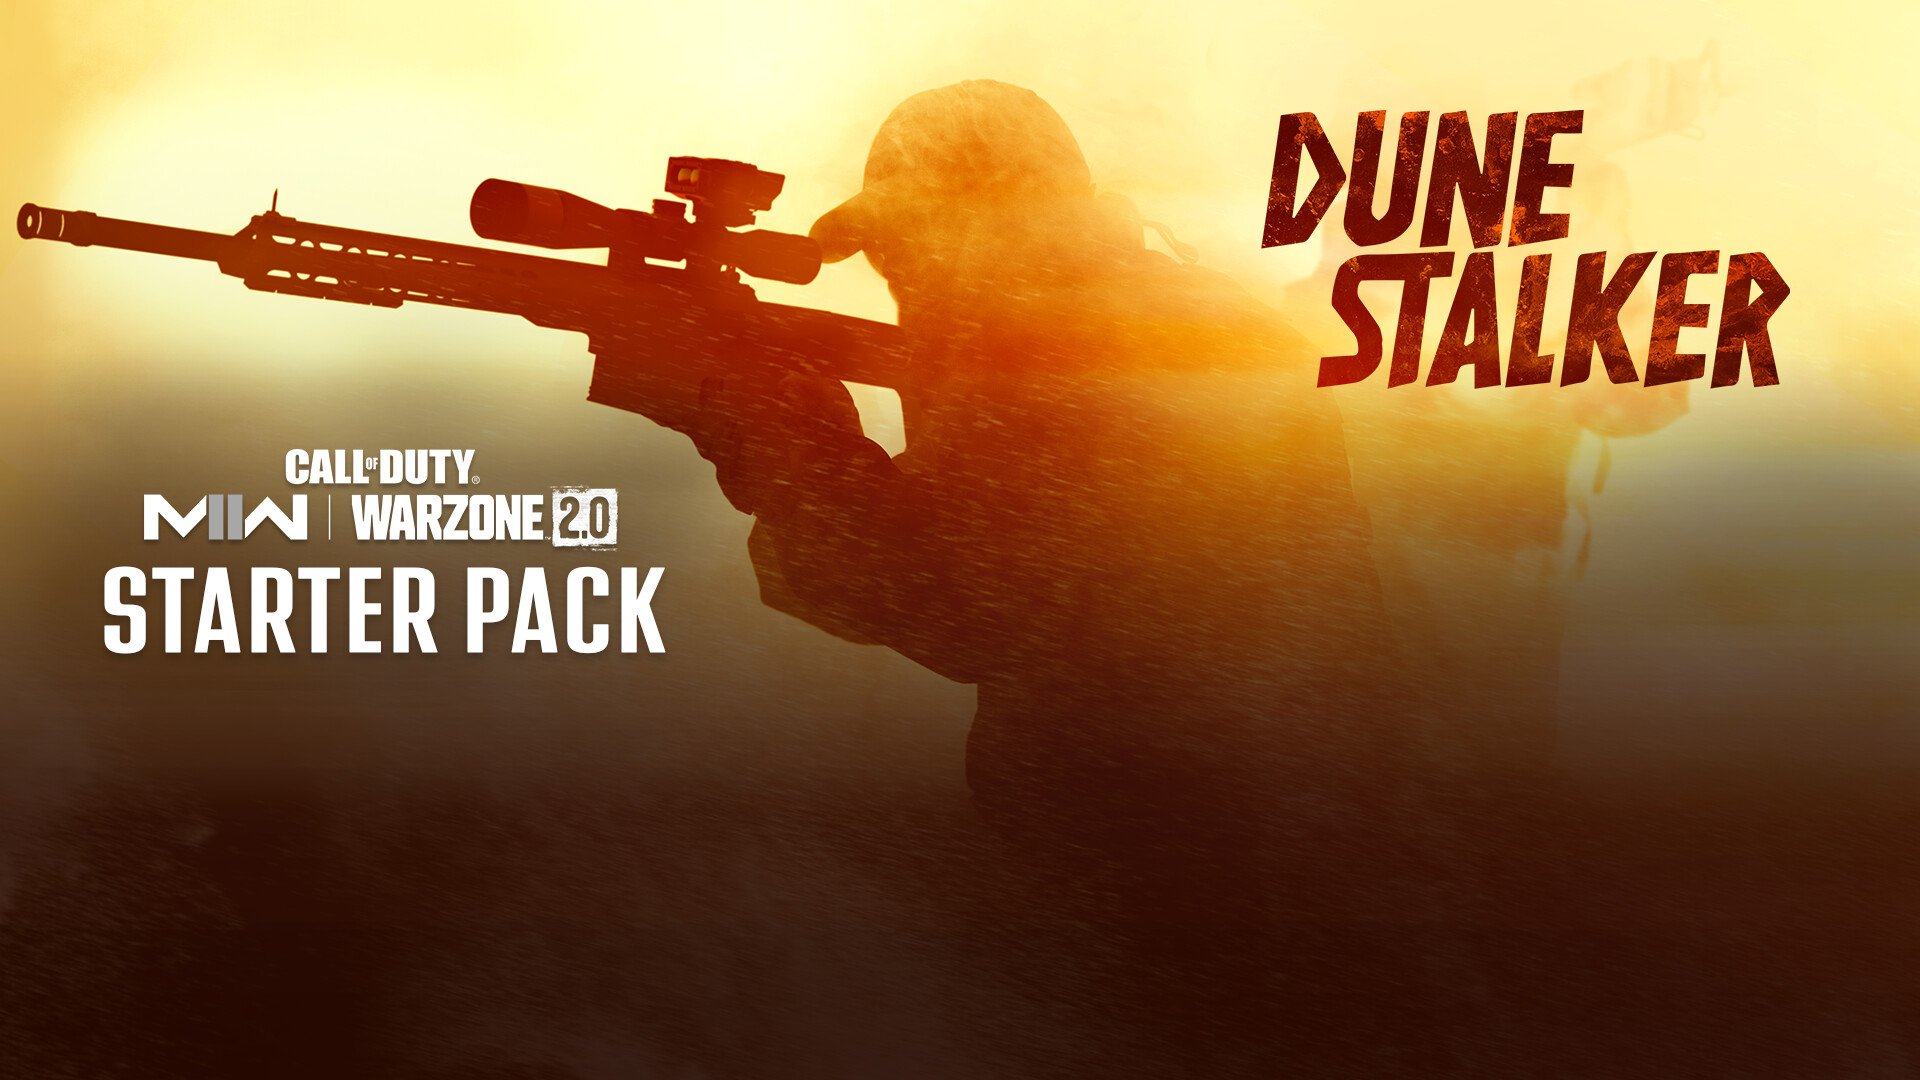 Call of Duty: Modern Warfare II - Dune Stalker: Starter Pack DLC Steam Altergift (13.93$)